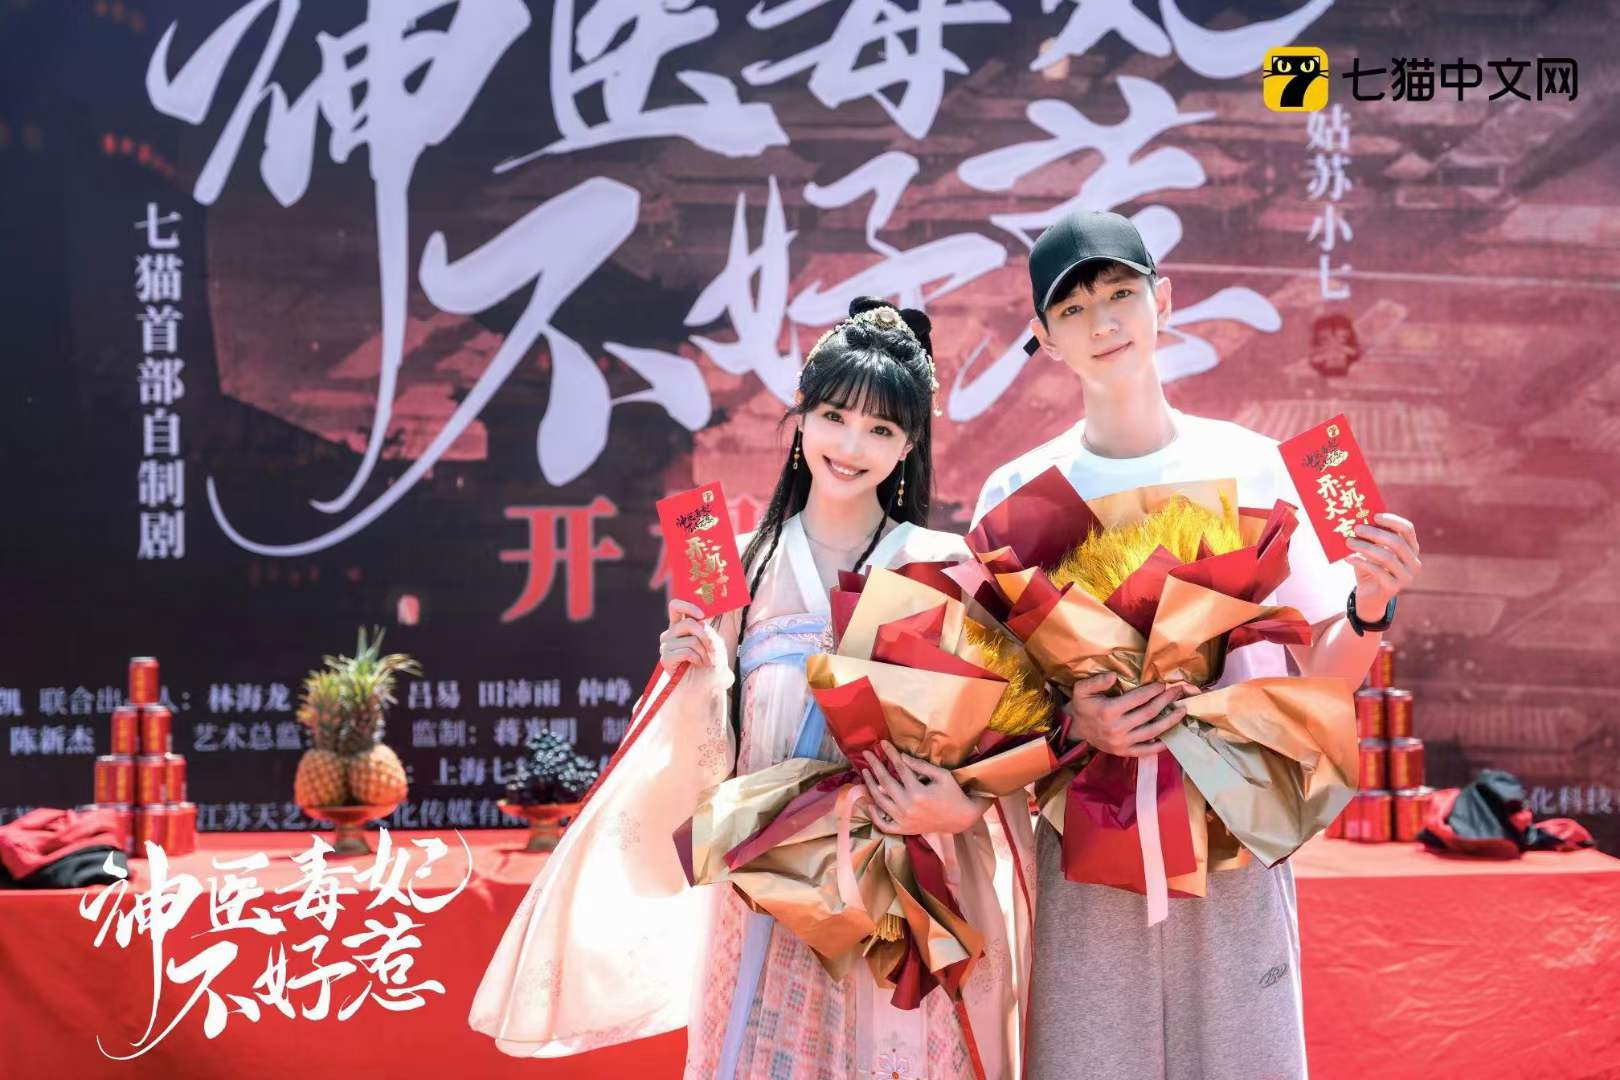 王彦凯、张 翀等众多优秀演员主演的《神医毒妃不好惹》在象山影视城正式开机